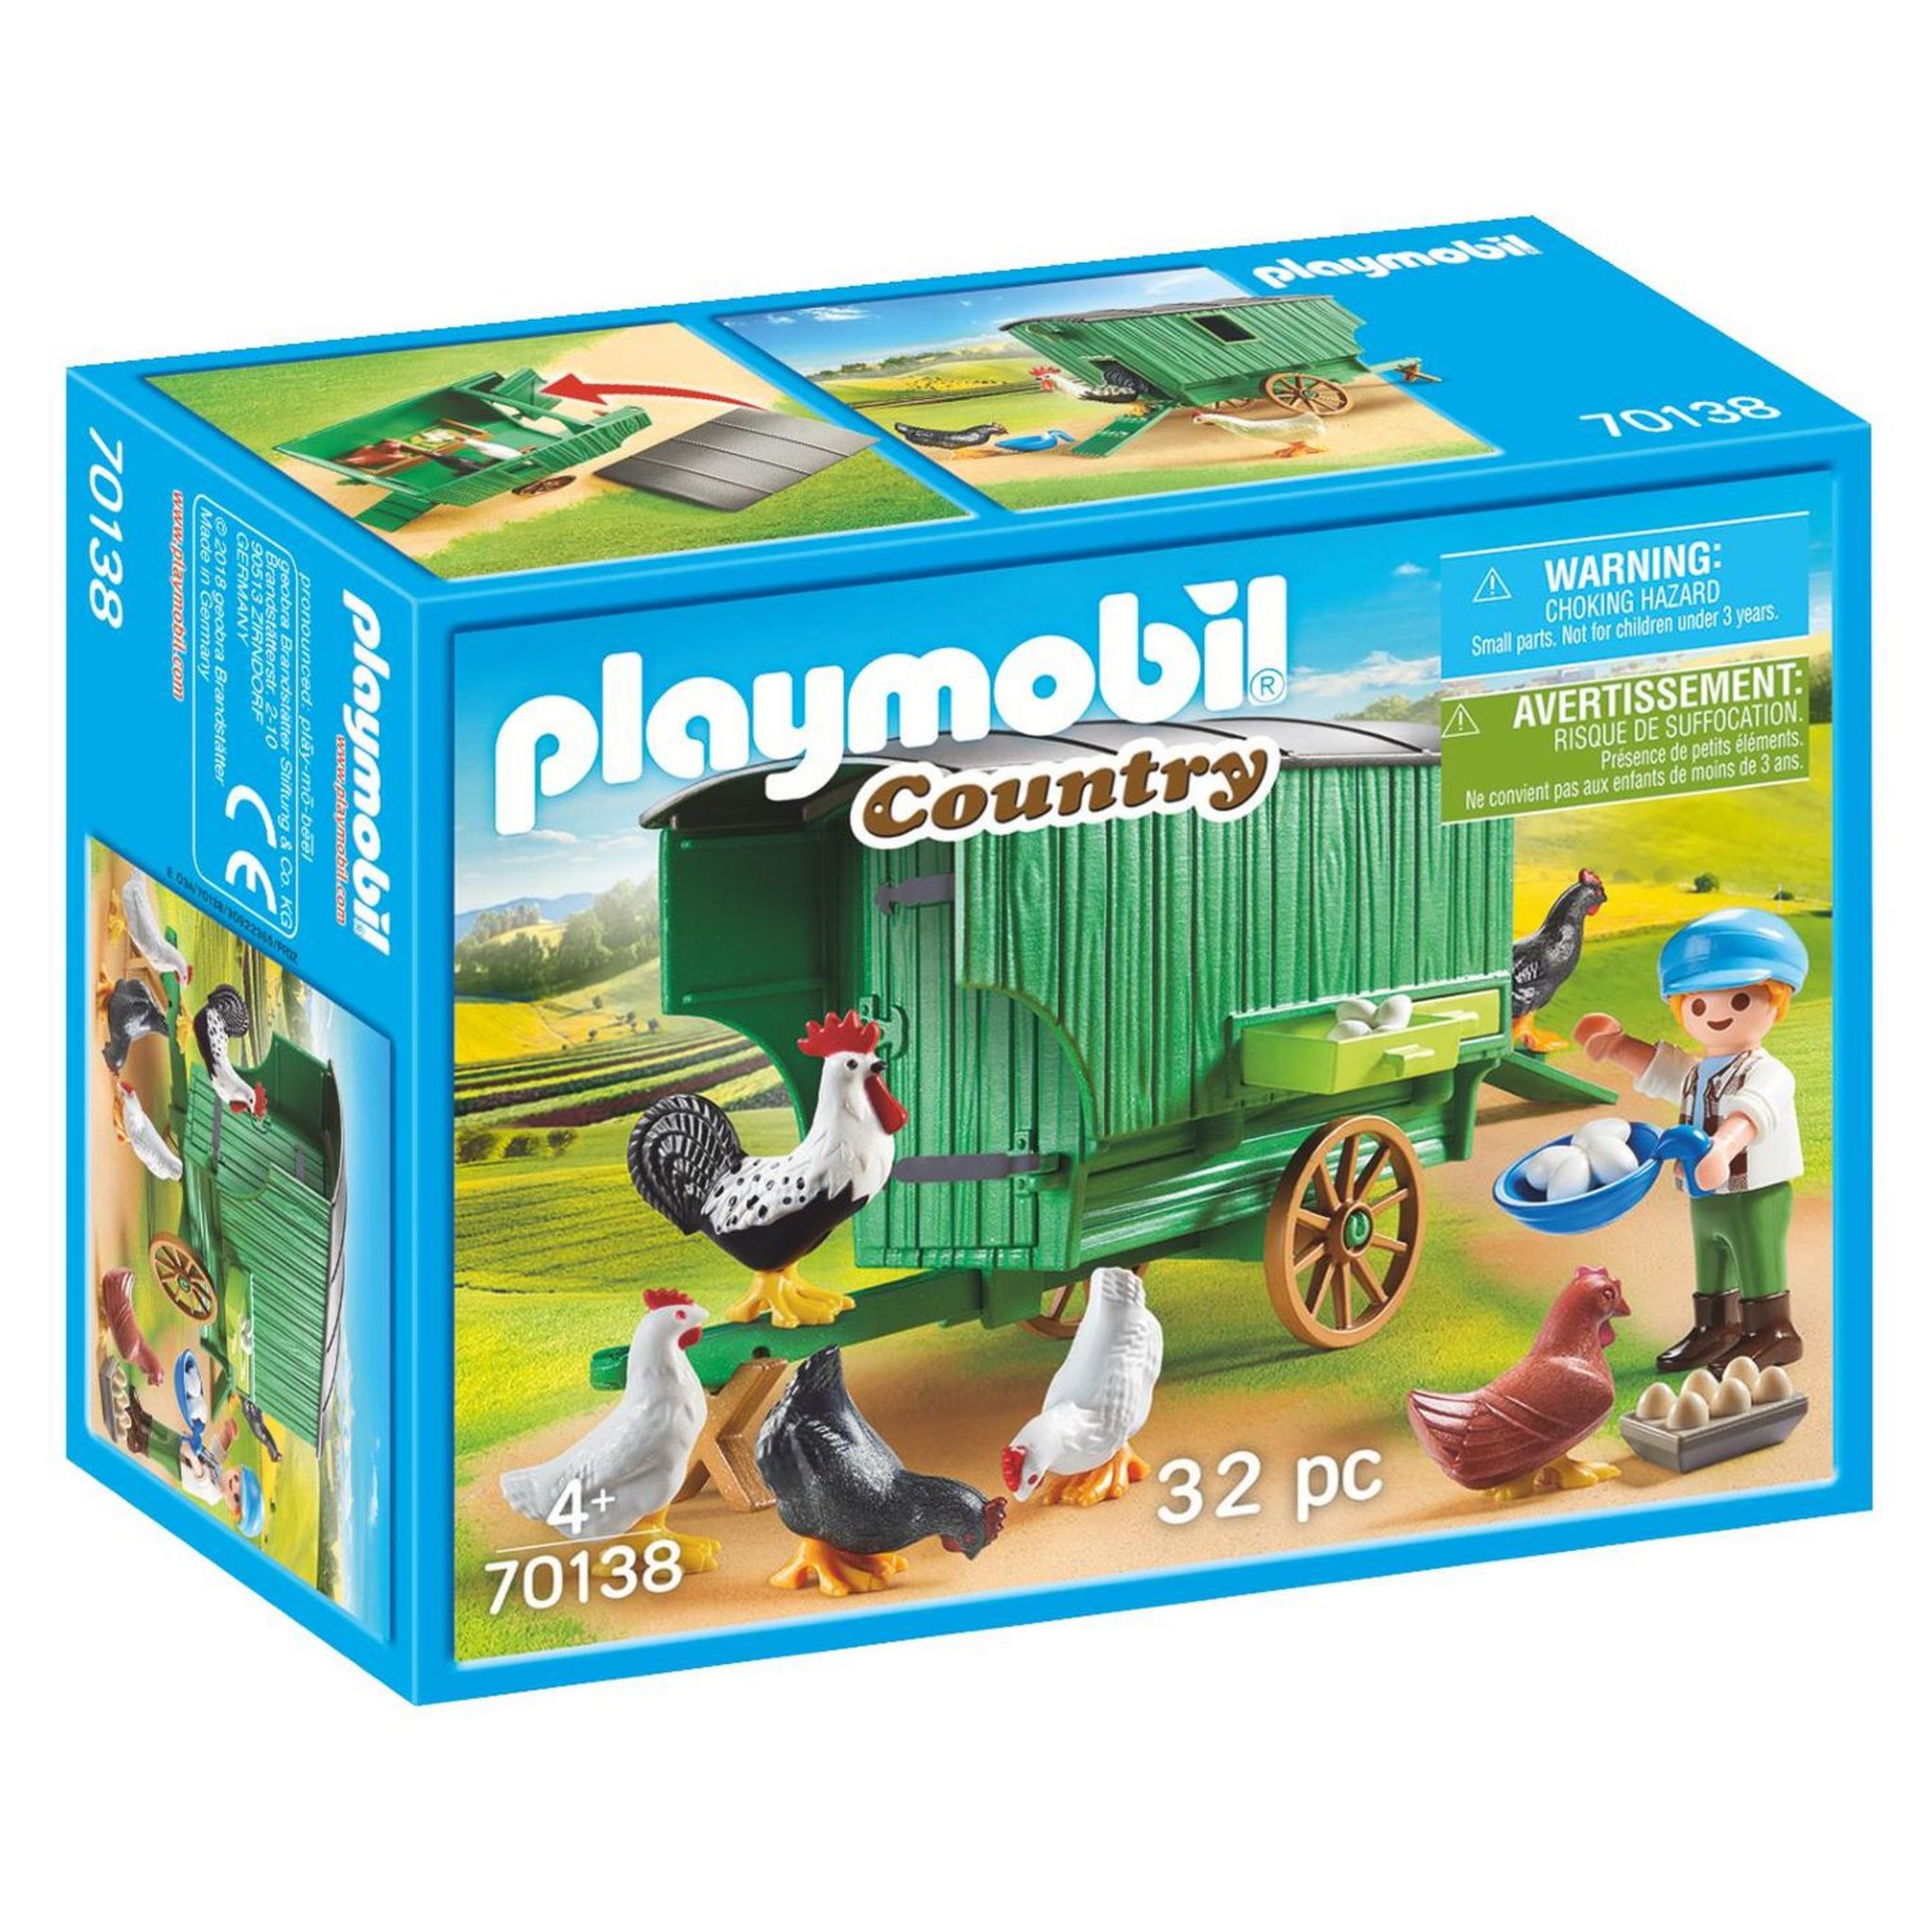 Playmobil Special Plus 70380 pas cher, Enfants et moto